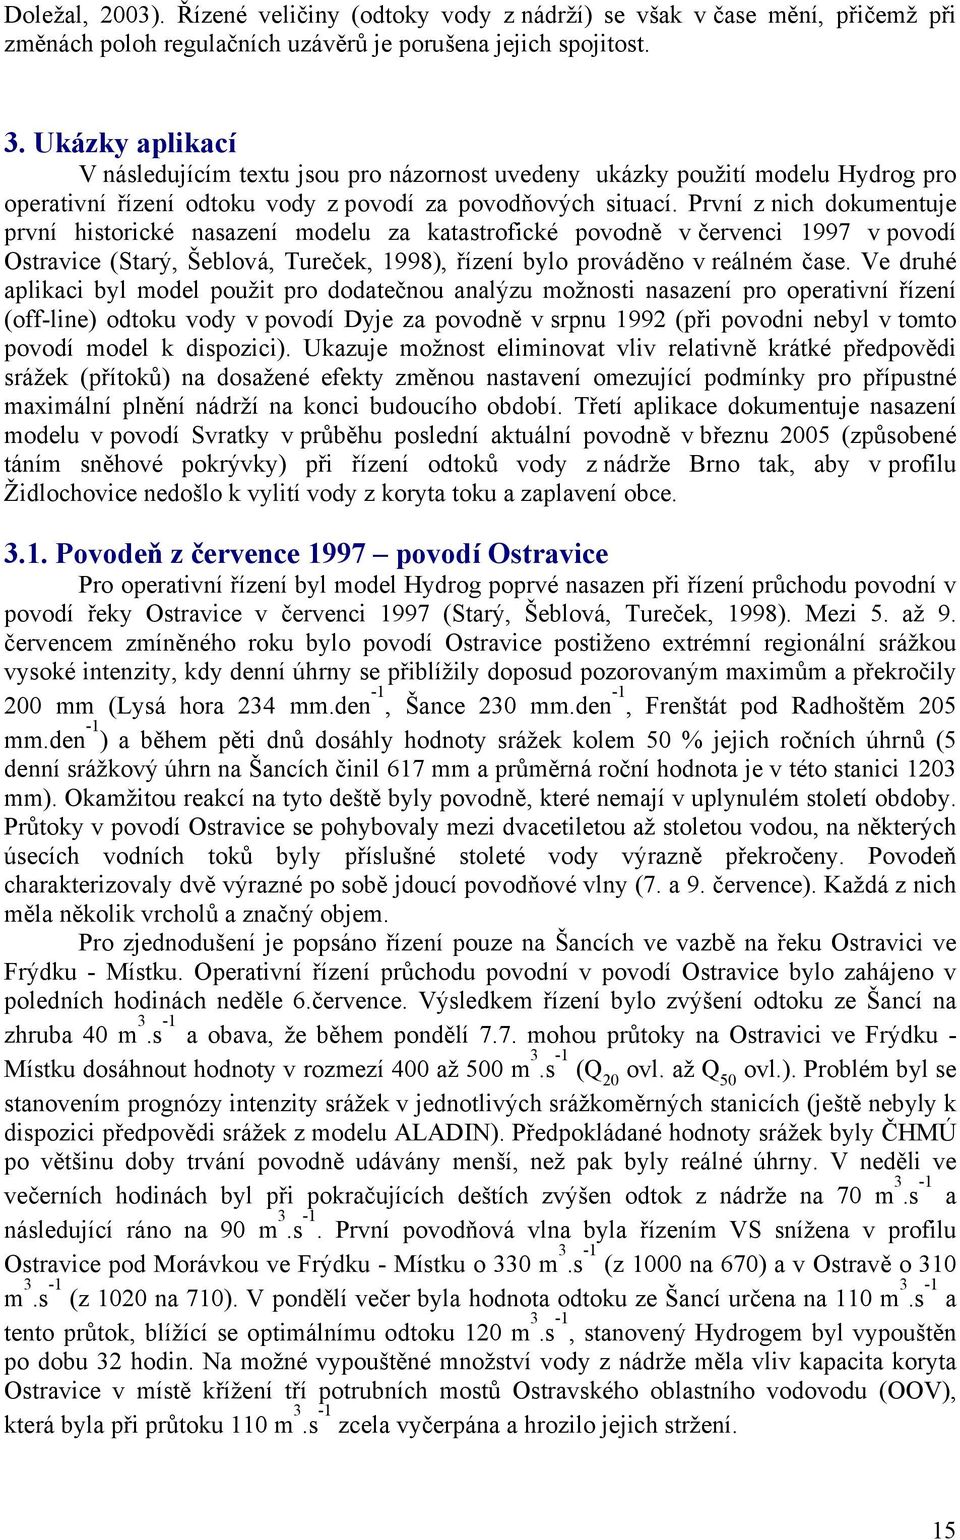 První z nich dokumentuje první historické nasazení modelu za katastrofické povodně v červenci 1997 v povodí Ostravice (Starý, Šeblová, Tureček, 1998), řízení bylo prováděno v reálném čase.